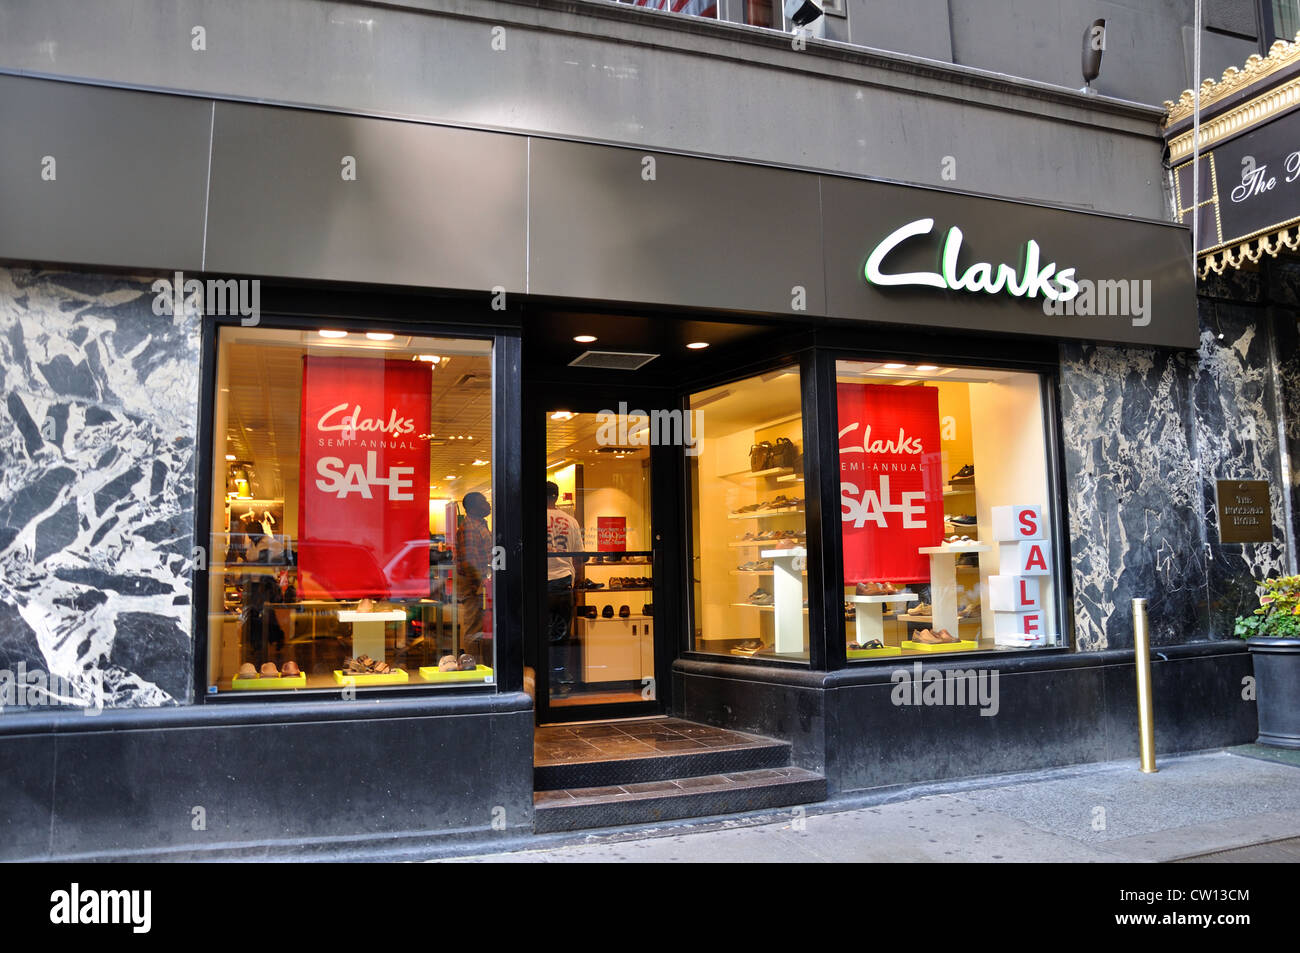 Clarks Schuhe Store, New York, USA Stockfotografie - Alamy